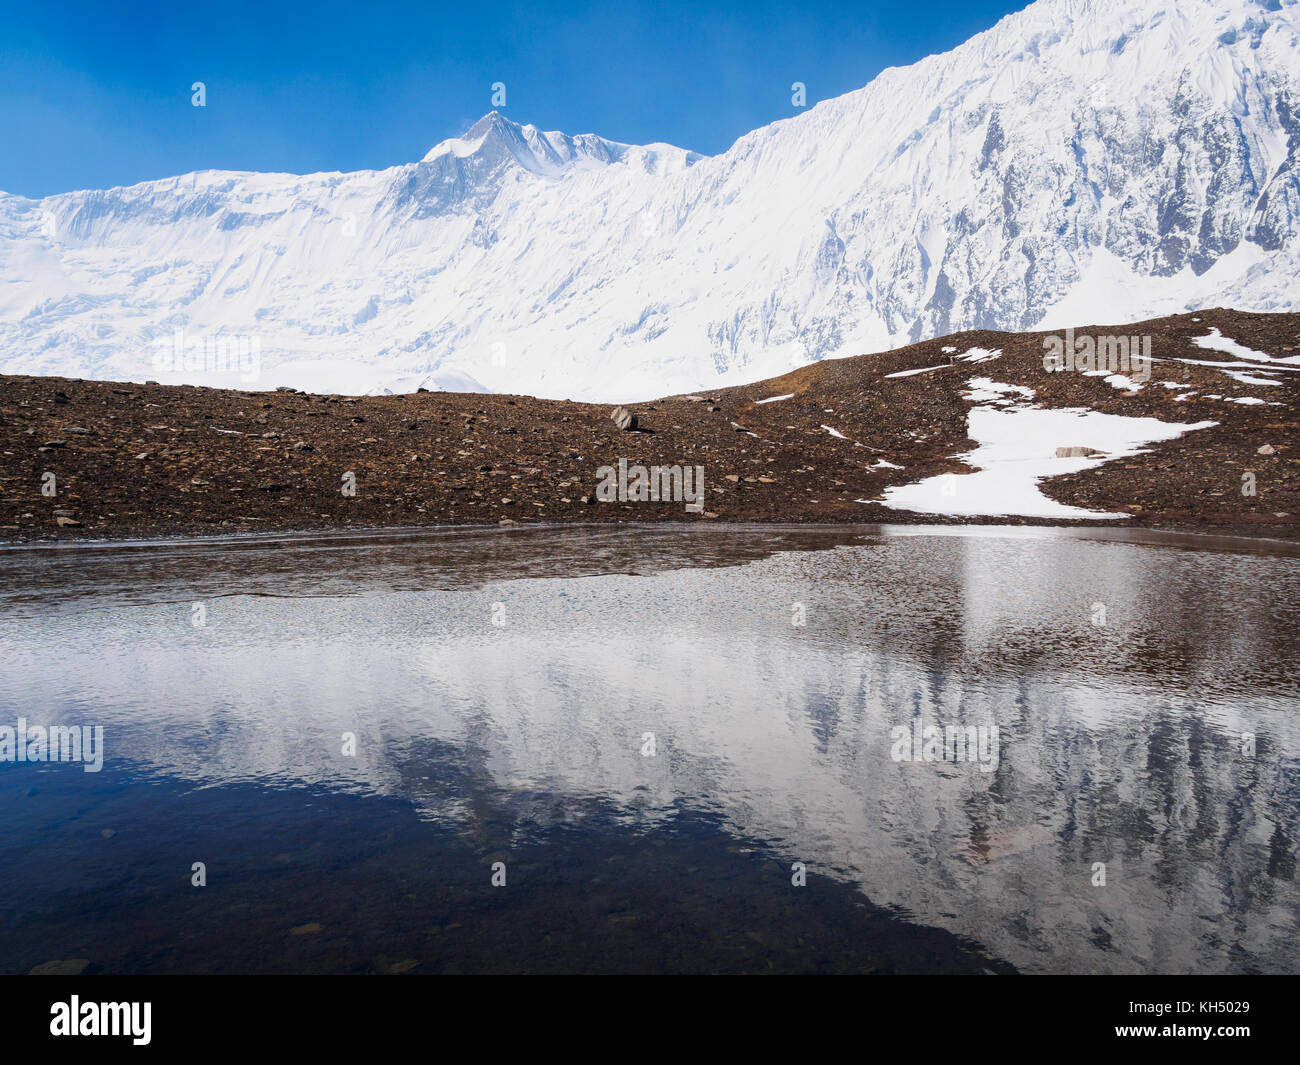 La riflessione della grande barriera mountain range in una piccola tarn vicino tilicho lake, Annapurna Himalaya, Nepal Foto Stock